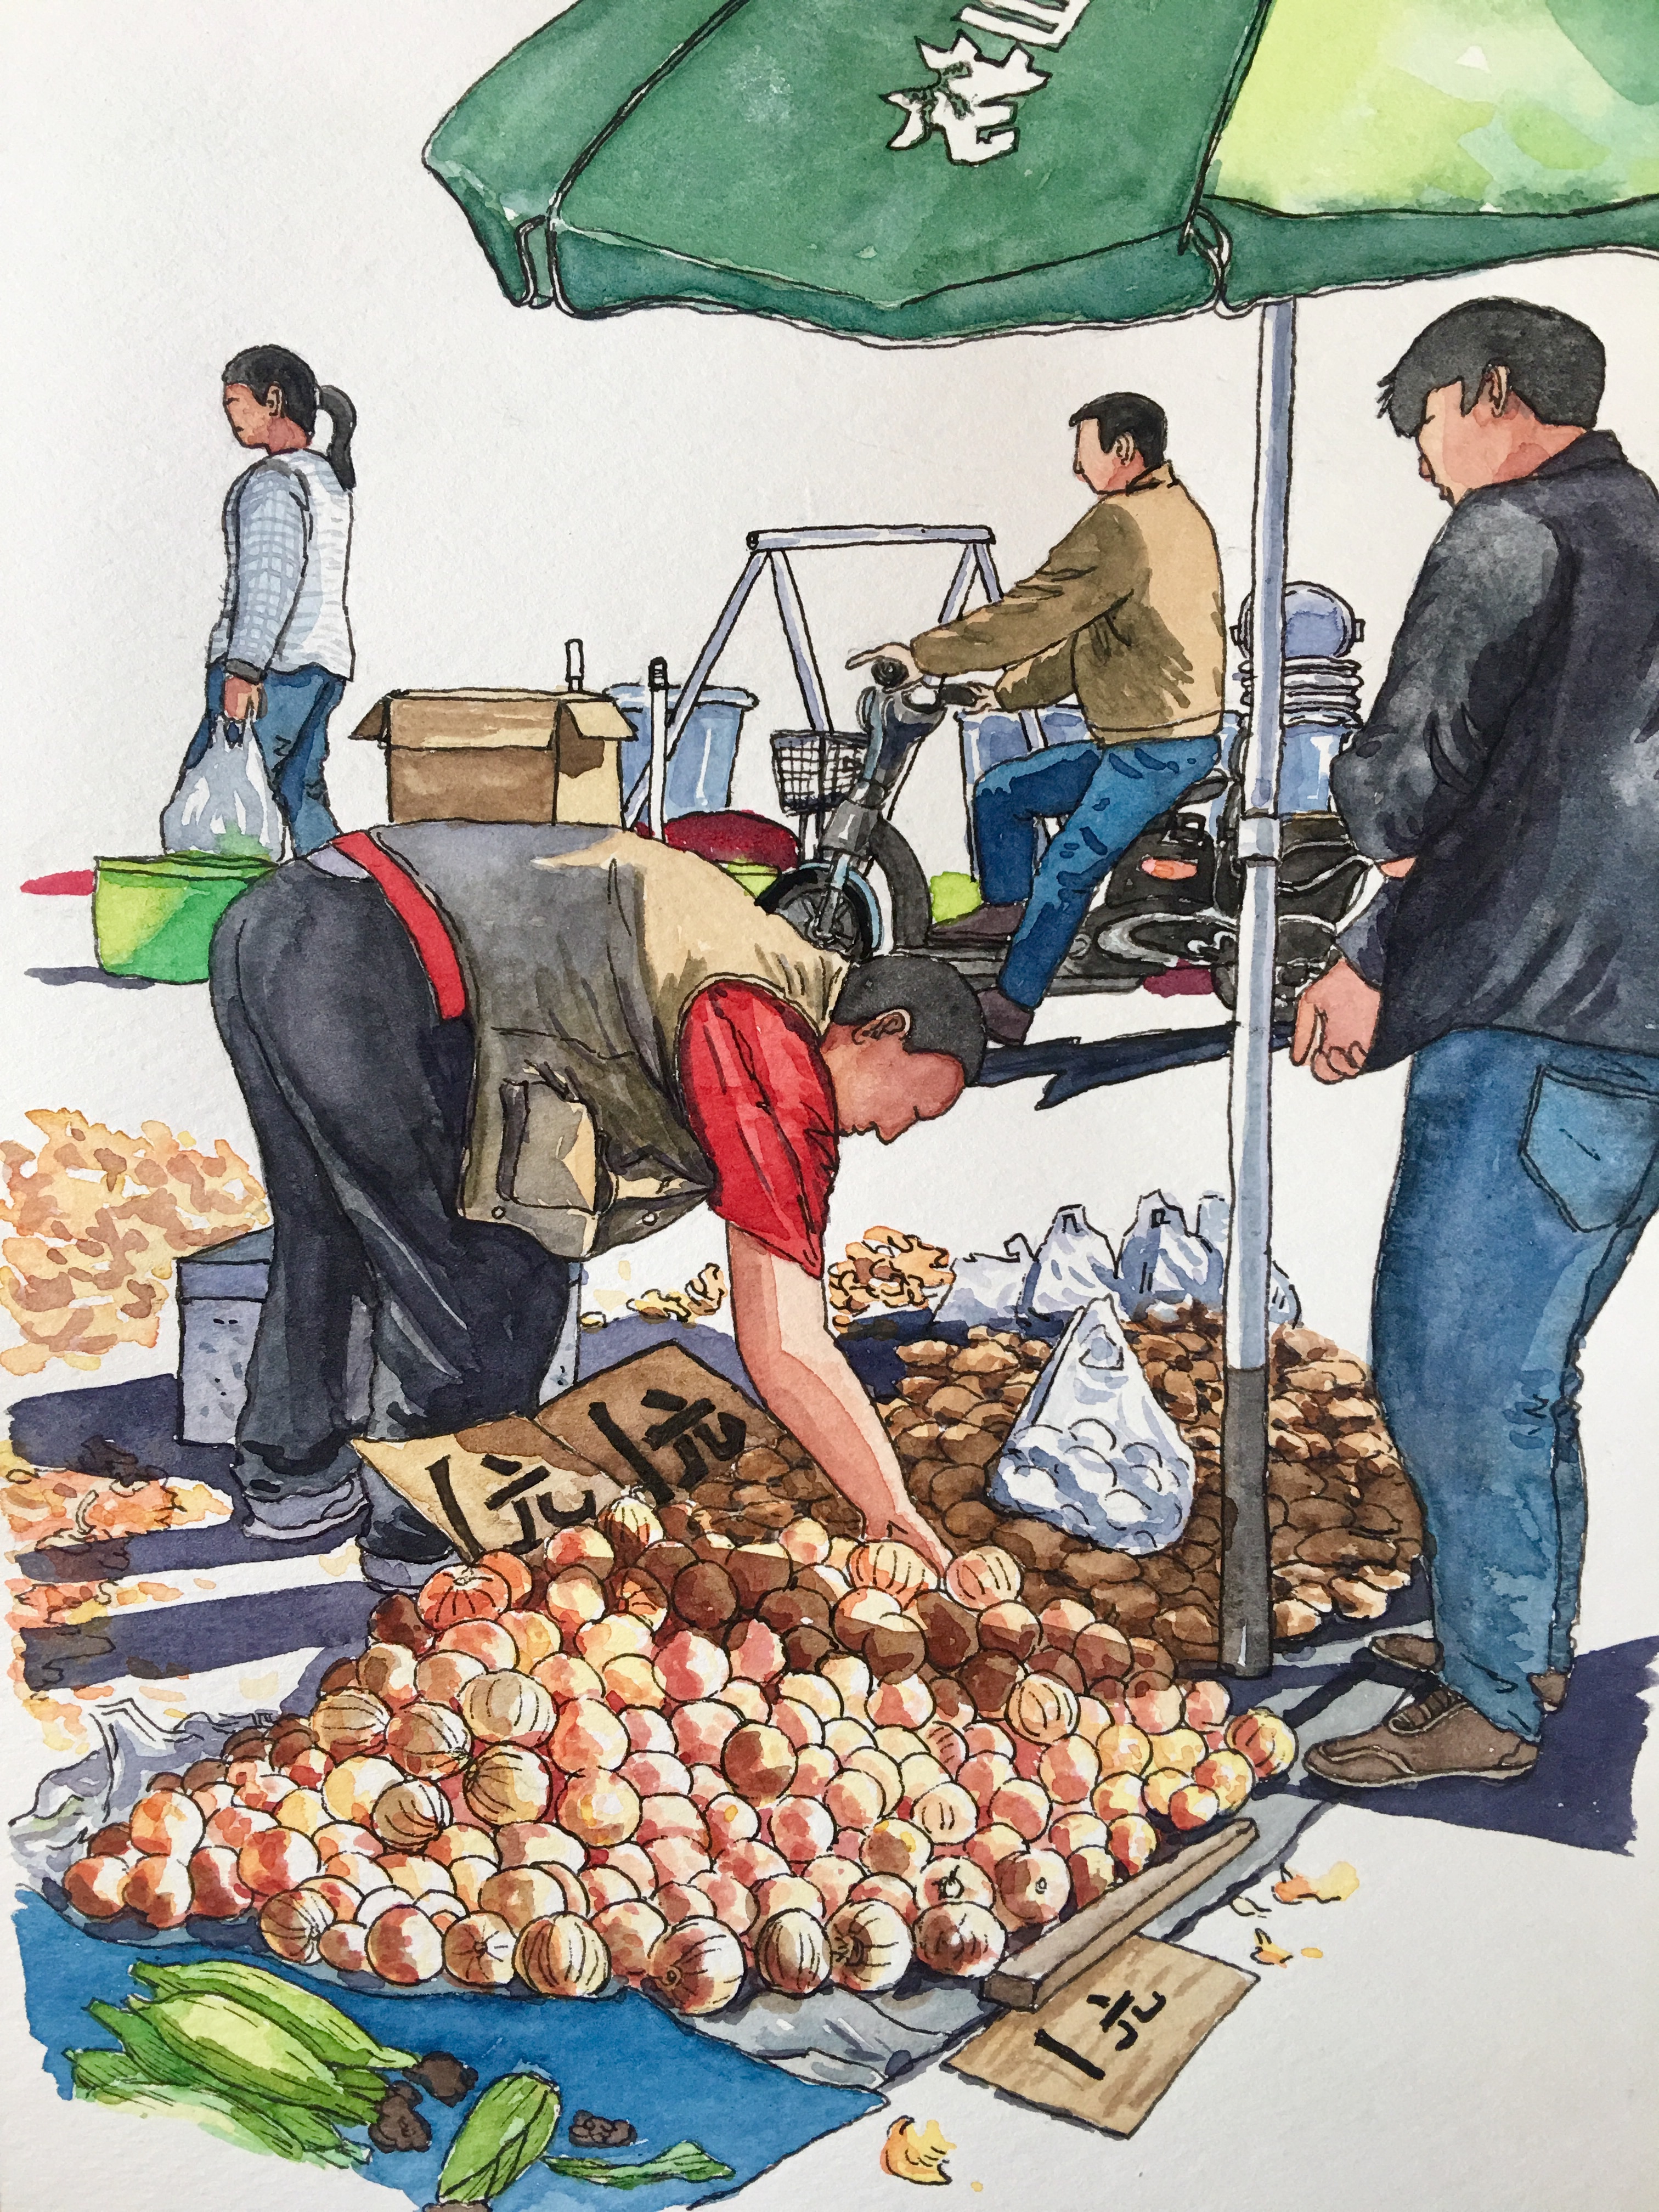 菜市场买菜绘画图图片